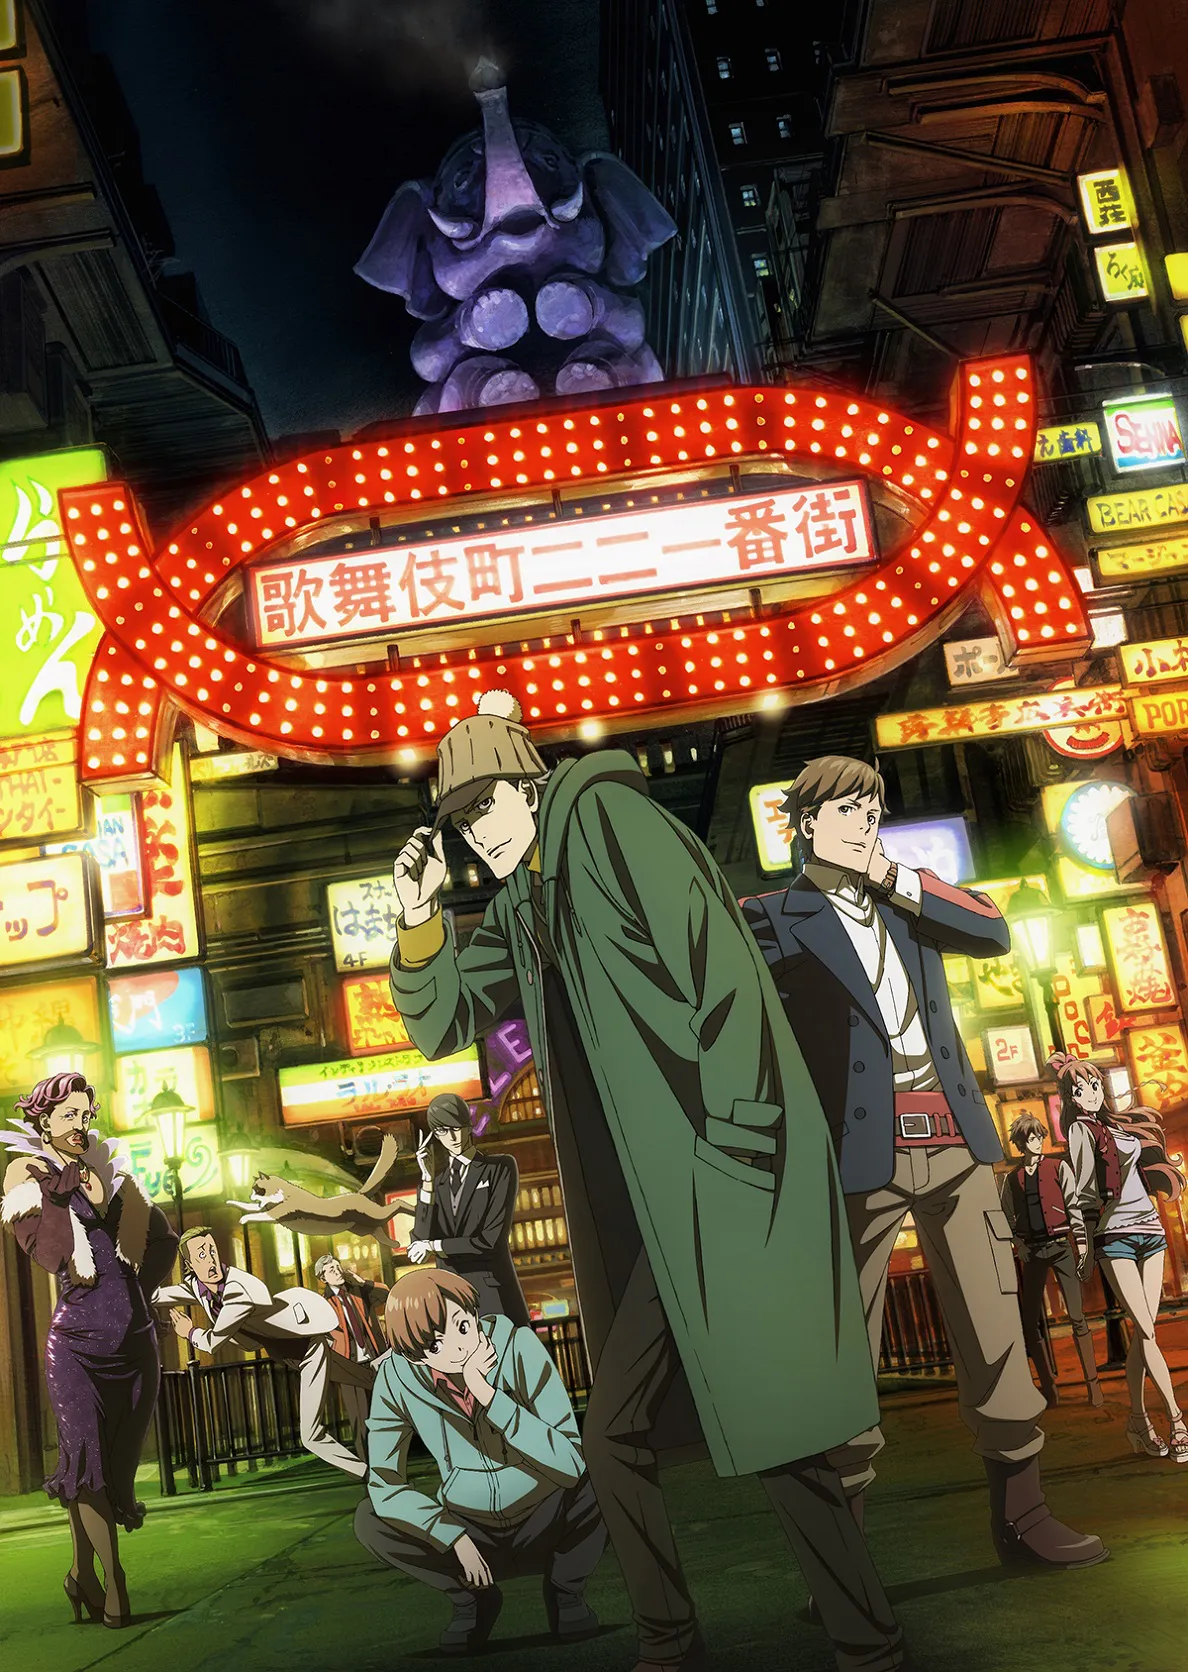 「歌舞伎町シャーロック」が2019年10月からMBS、TBSほか「アニメイズム」枠での放送が決定した